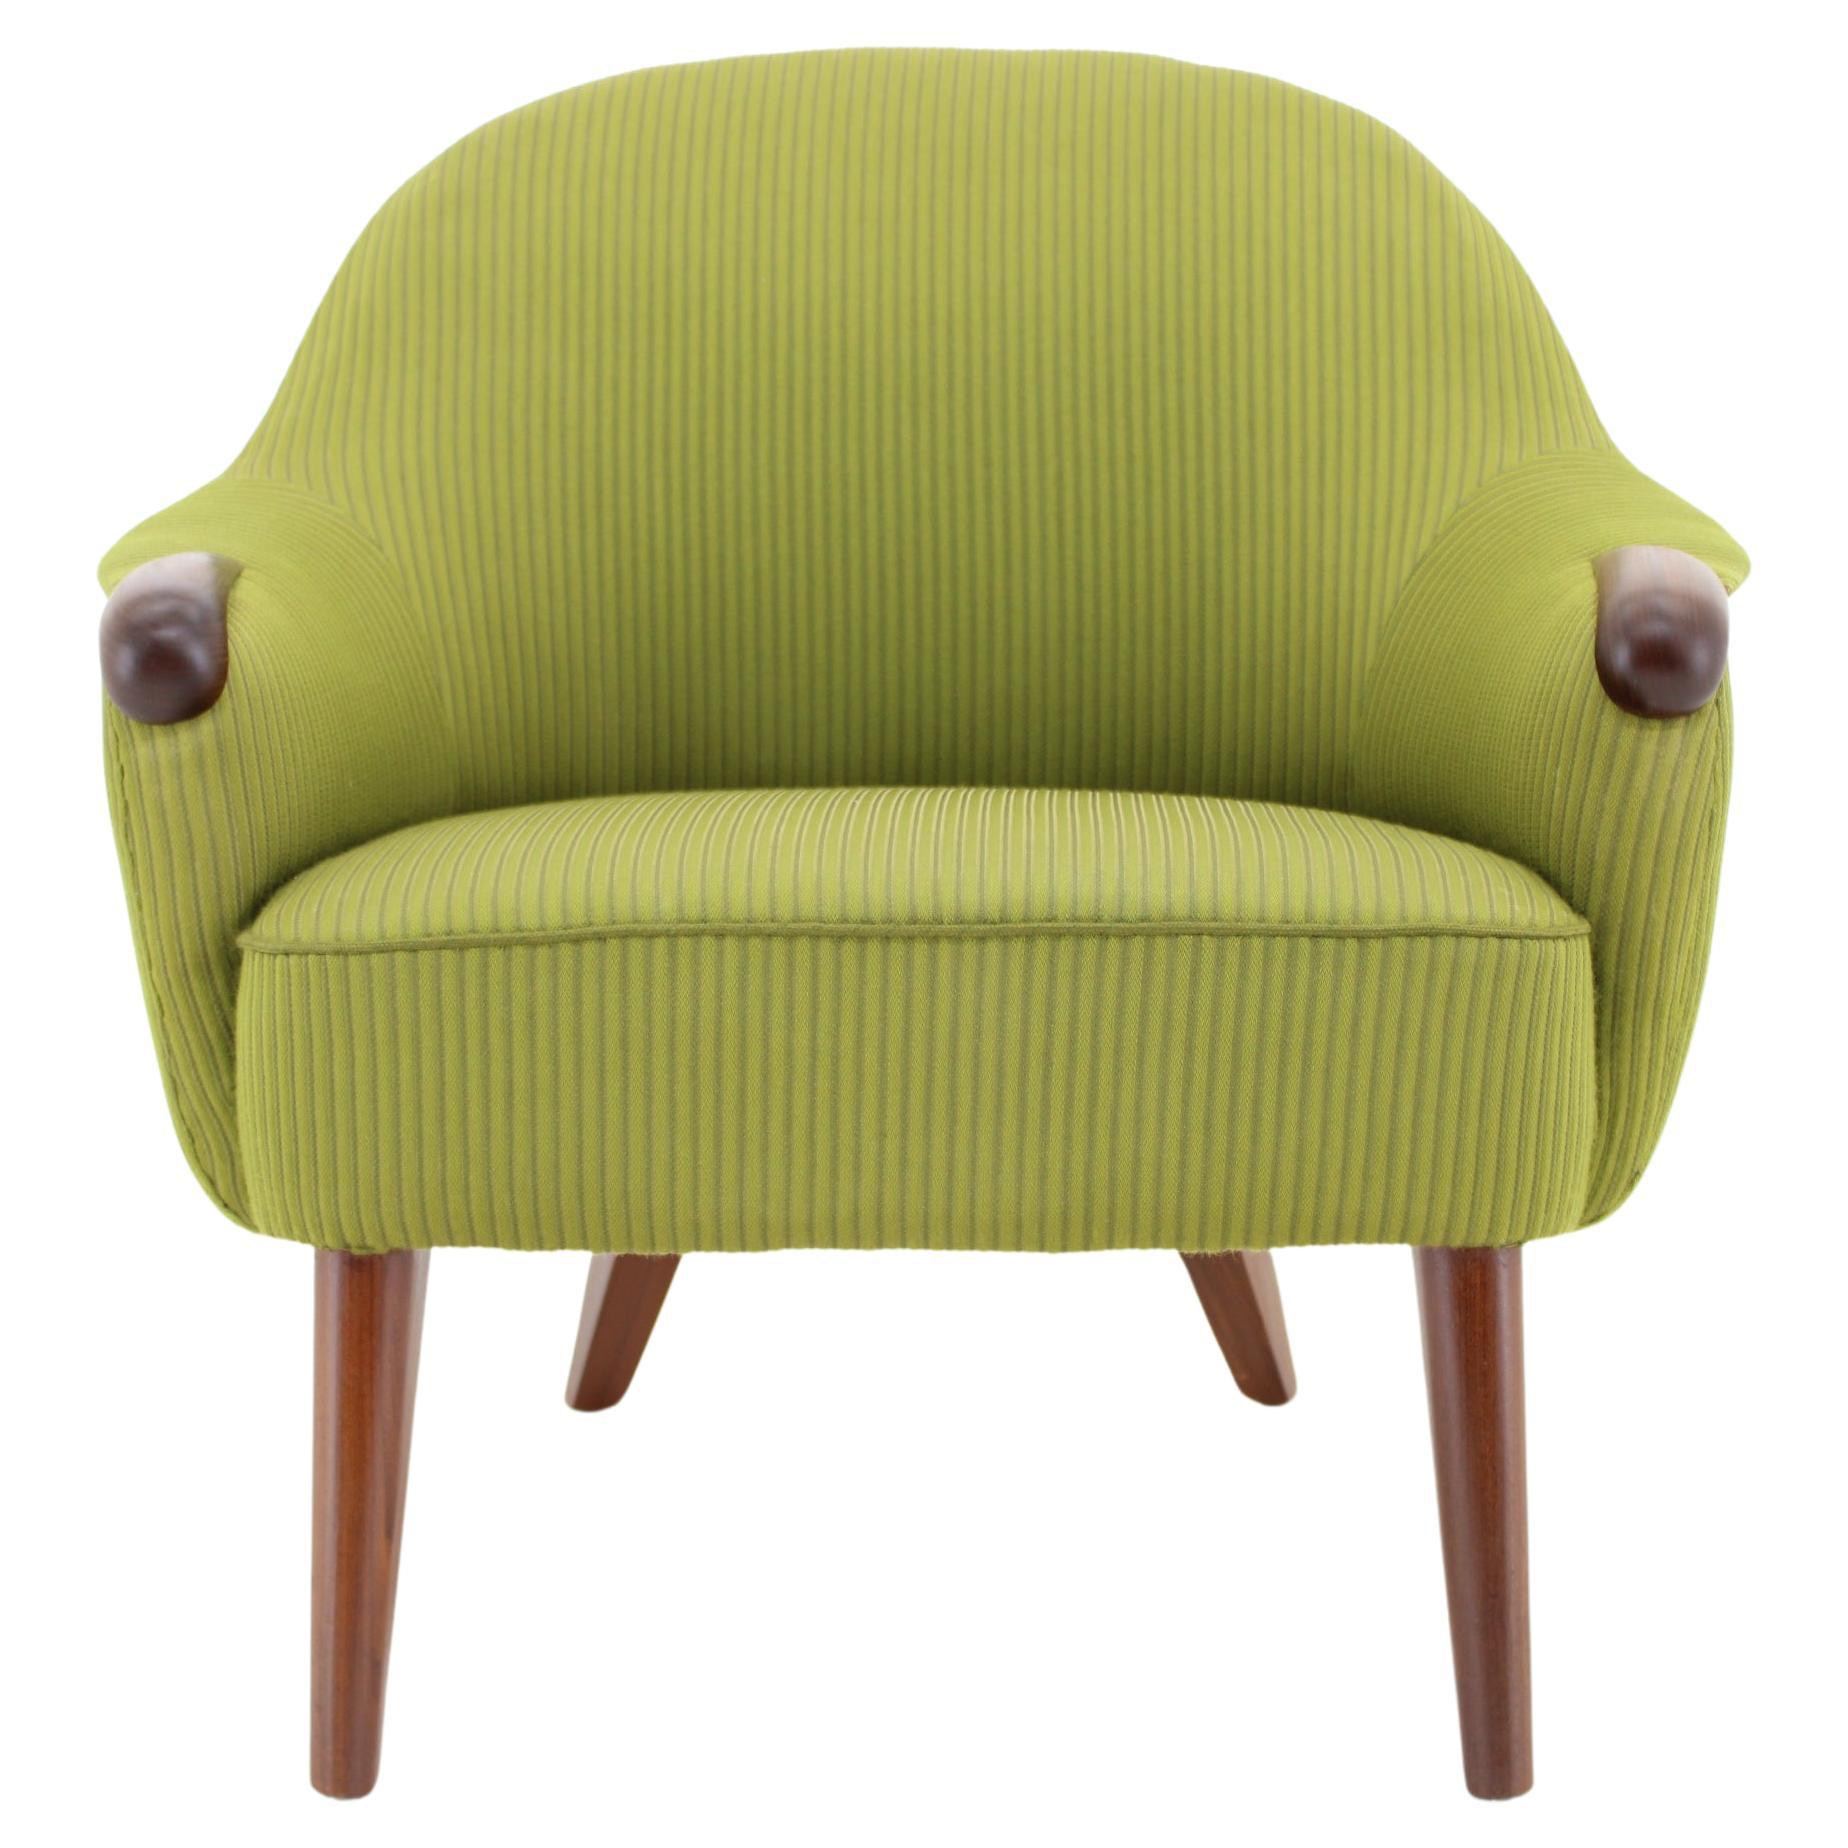 1960s Danish Lounge Chair